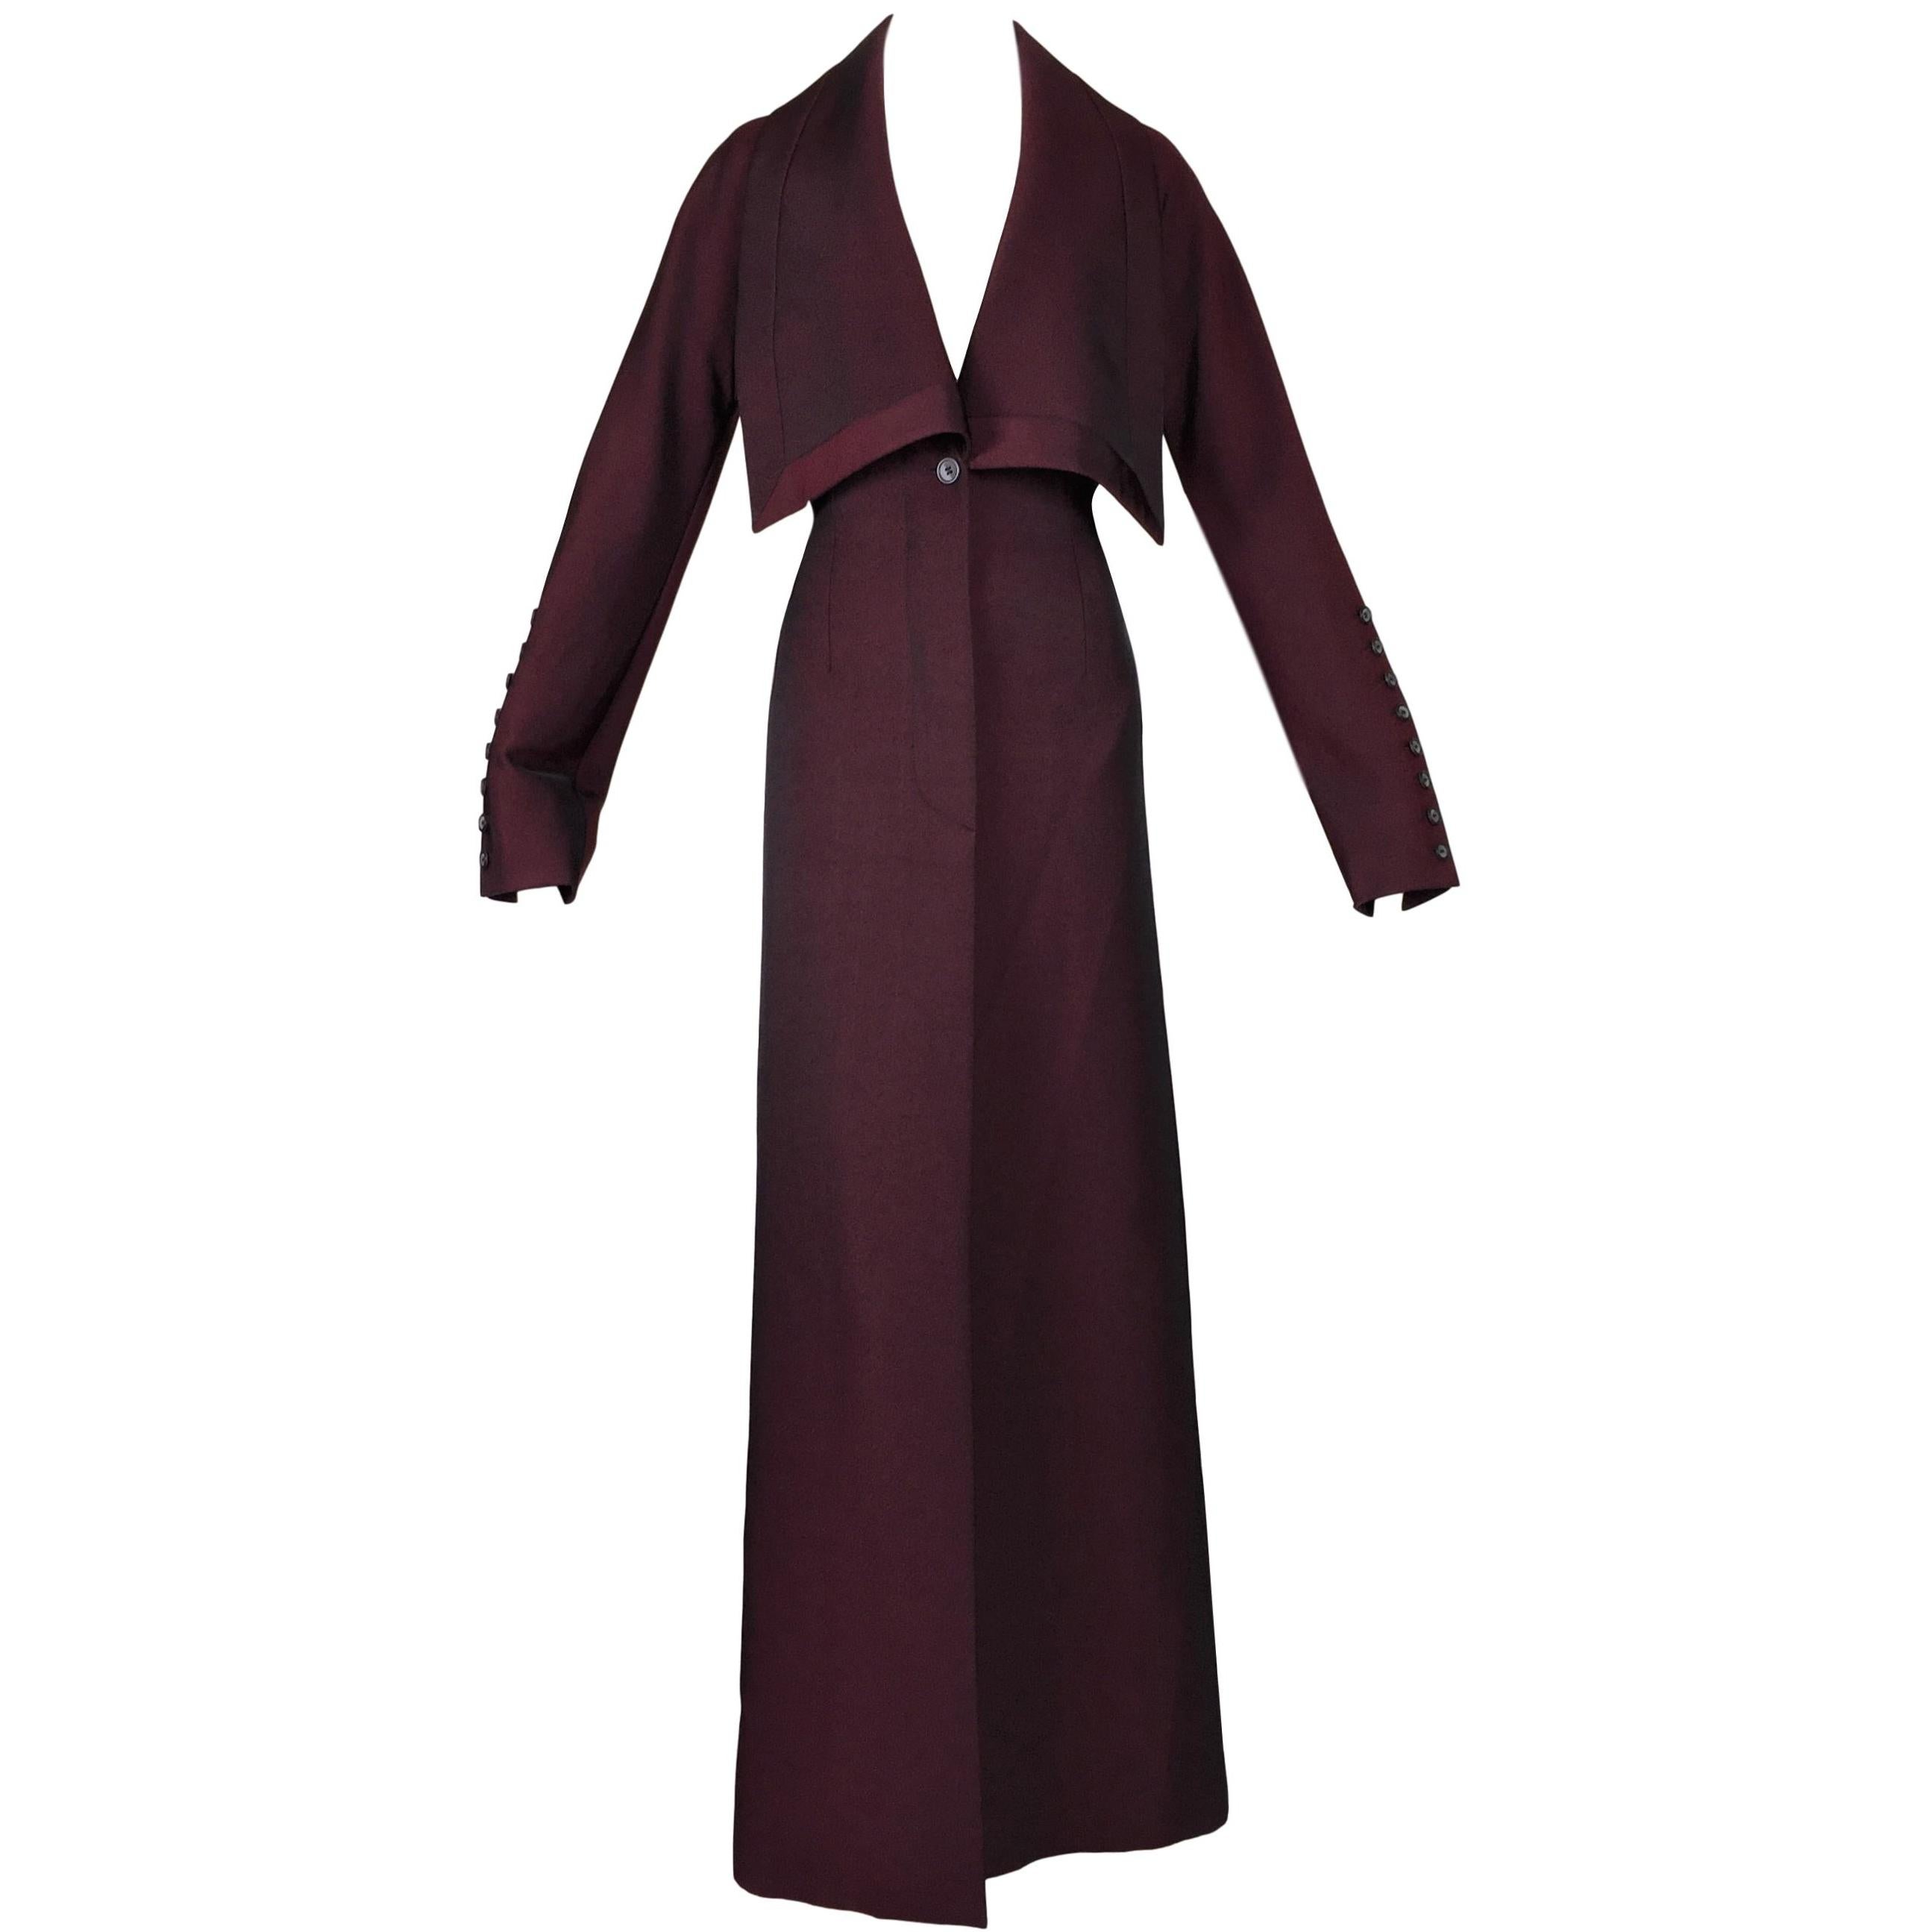 F/W 1998 "Joan" Alexander McQueen Oxblood Red Catholic Long Dress Coat